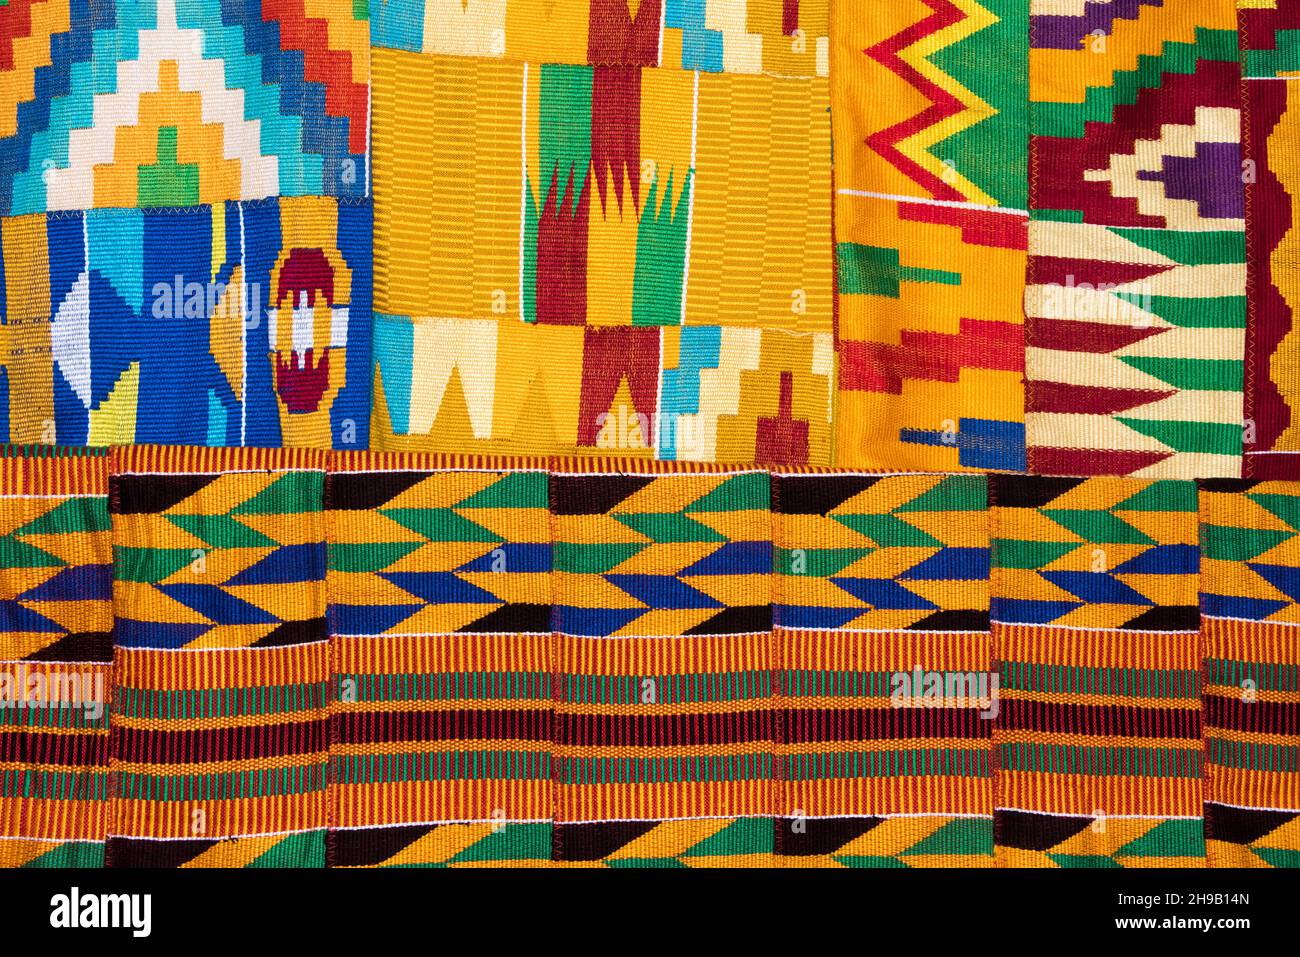 Weberei Kente Tuch, eine Art von Seide und Baumwolle Stoff aus gewebten Stoffstreifen hergestellt und aus der Akan ethnischen Gruppe von Ghana, Ashanti Regio Stockfoto